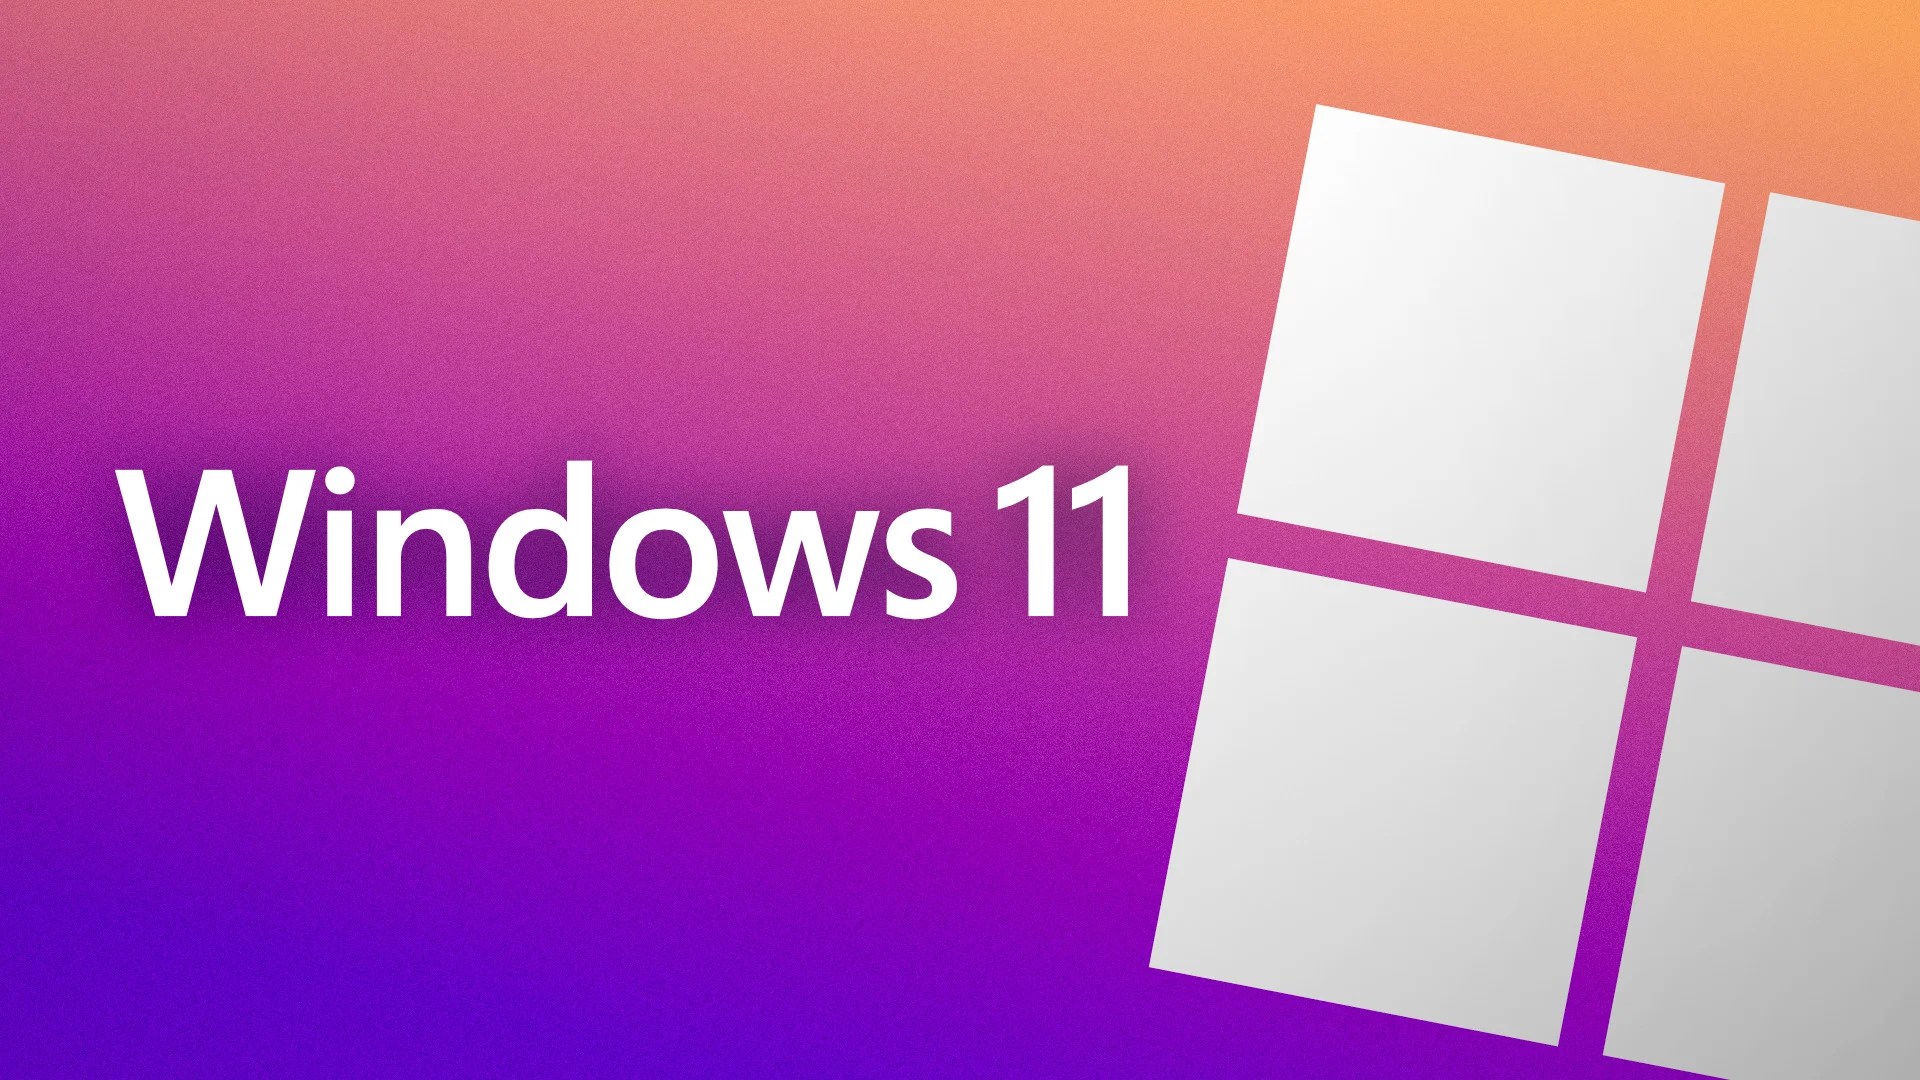 Windows 11 : conférence spéciale le 5 avril, que faut-il en attendre ?